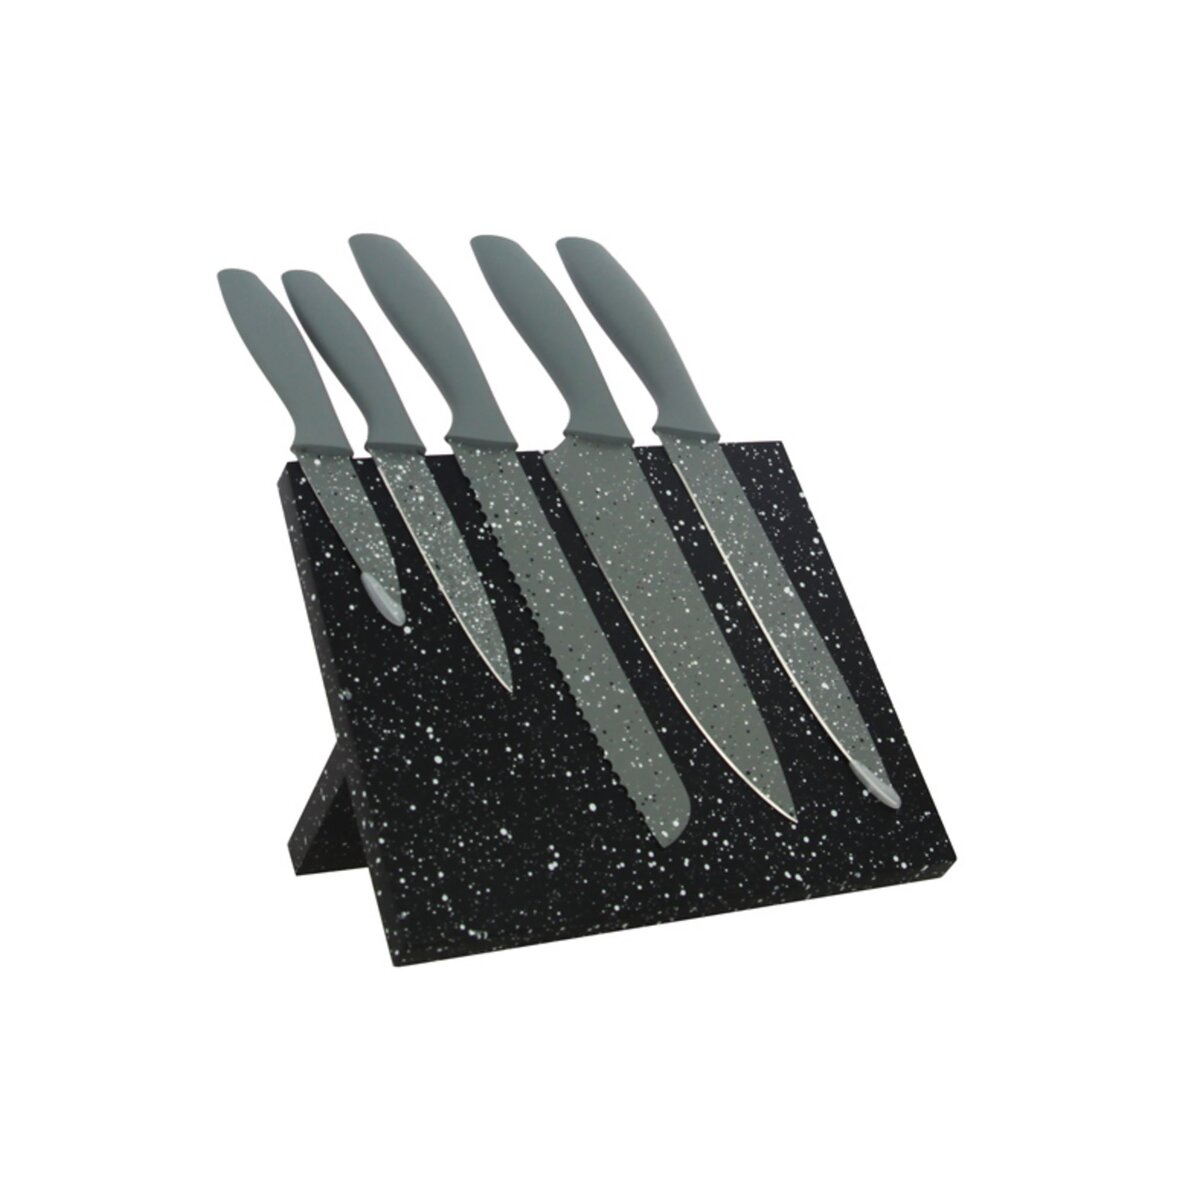 Support magnétique effet marbre avec 5 couteaux inox